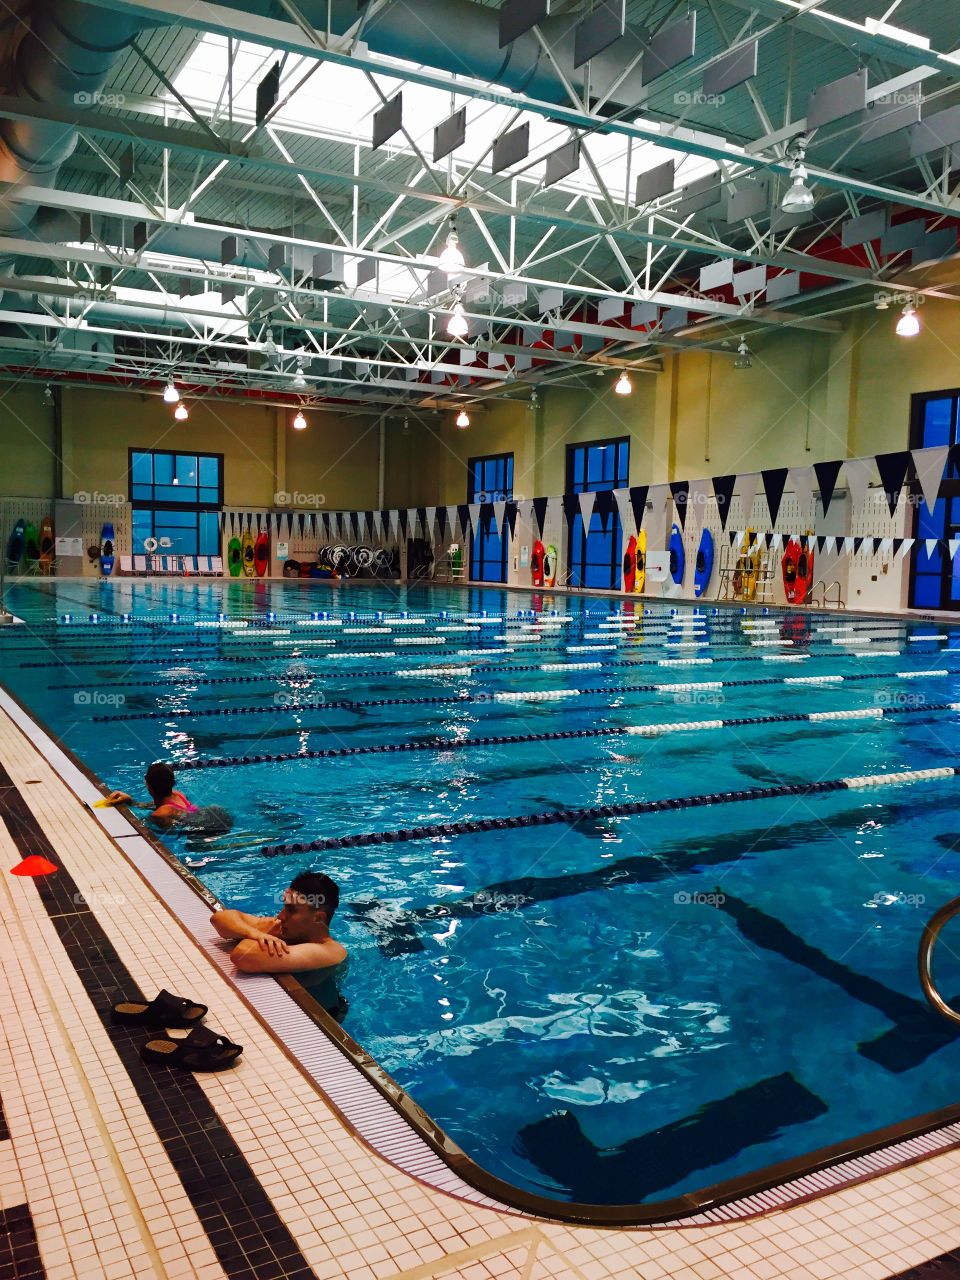 Olympic swim pool